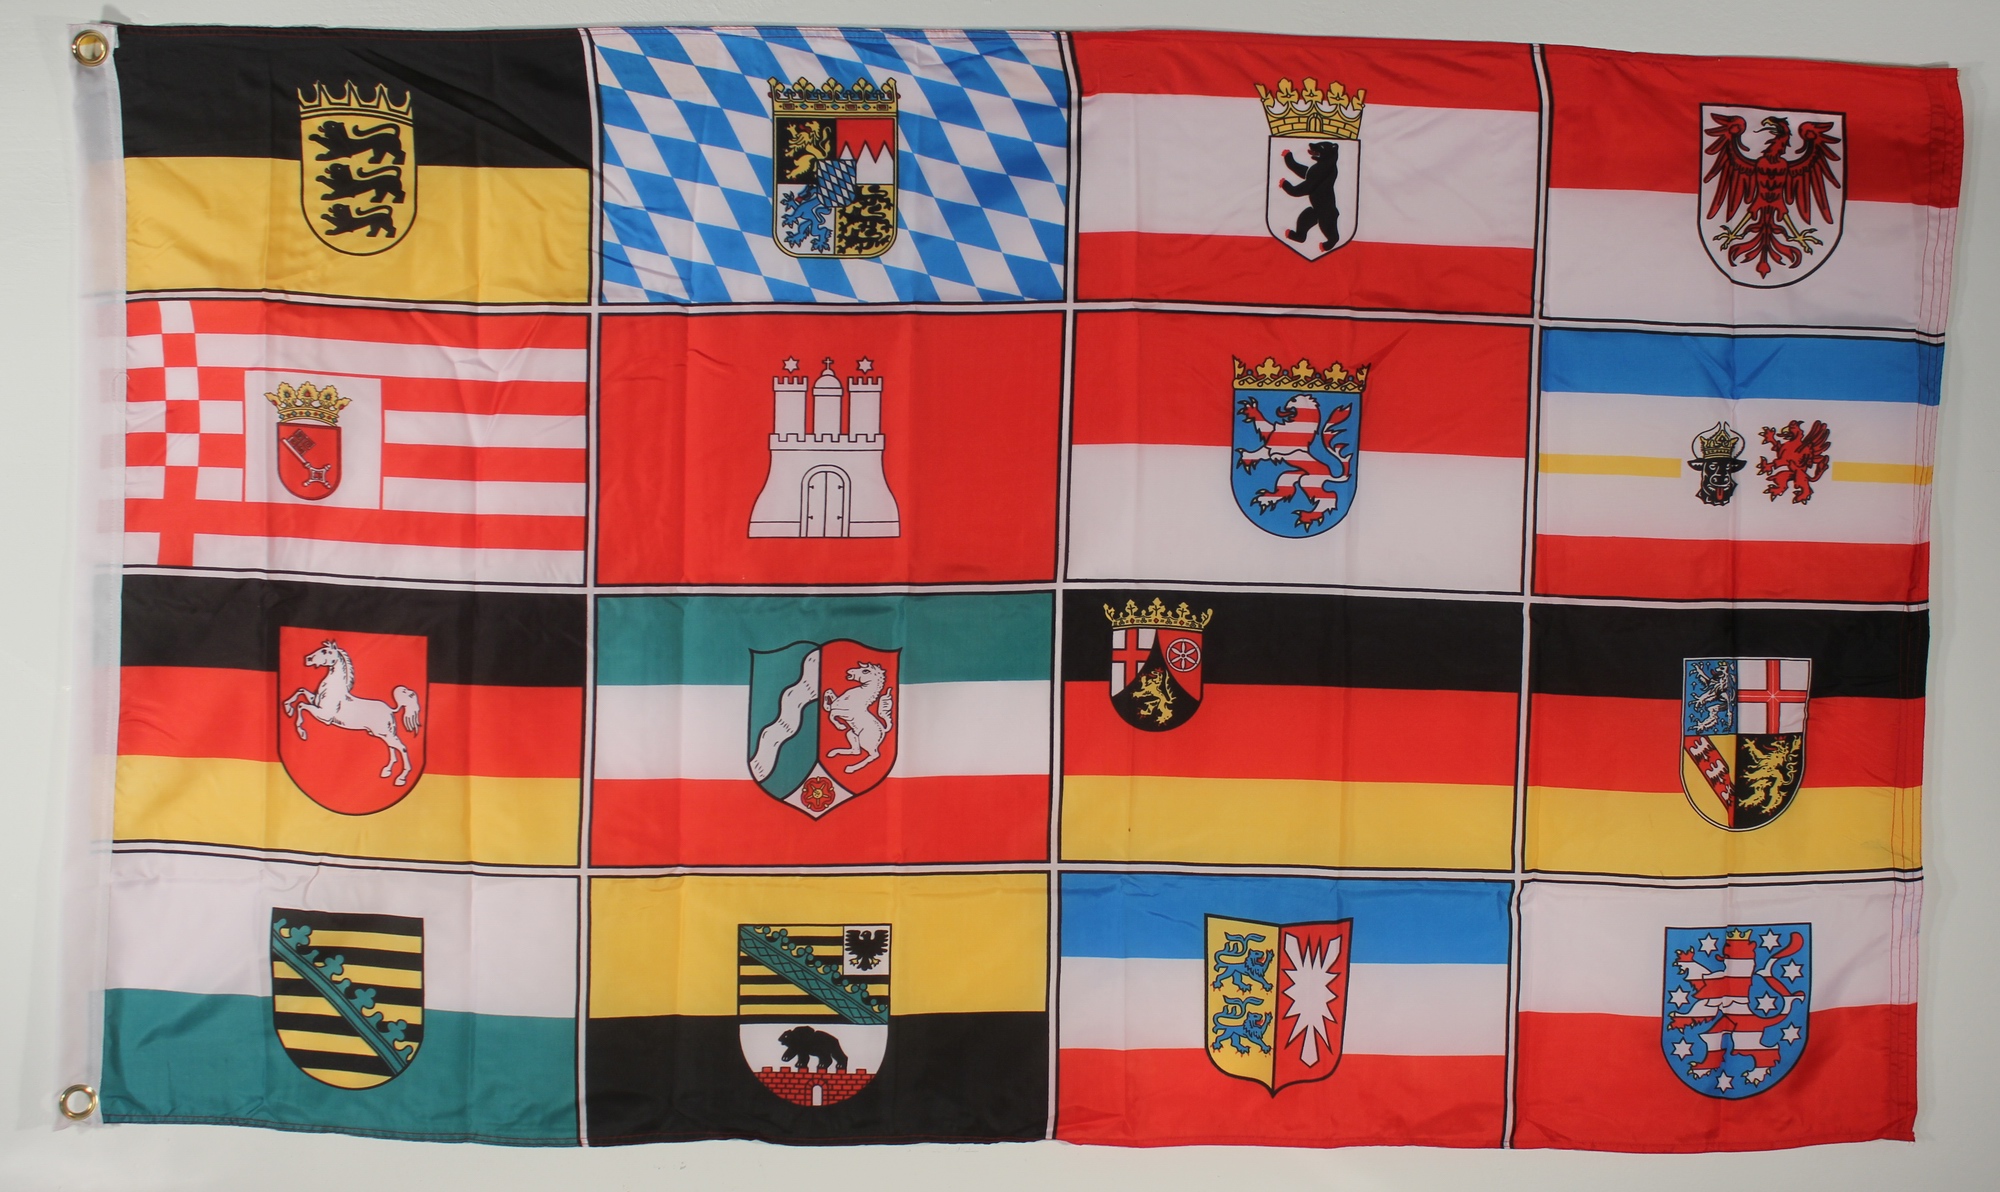 Schlüsselanhänger Flagge Fahne Belgien-Deutschland Alu 40 x 57 mm 